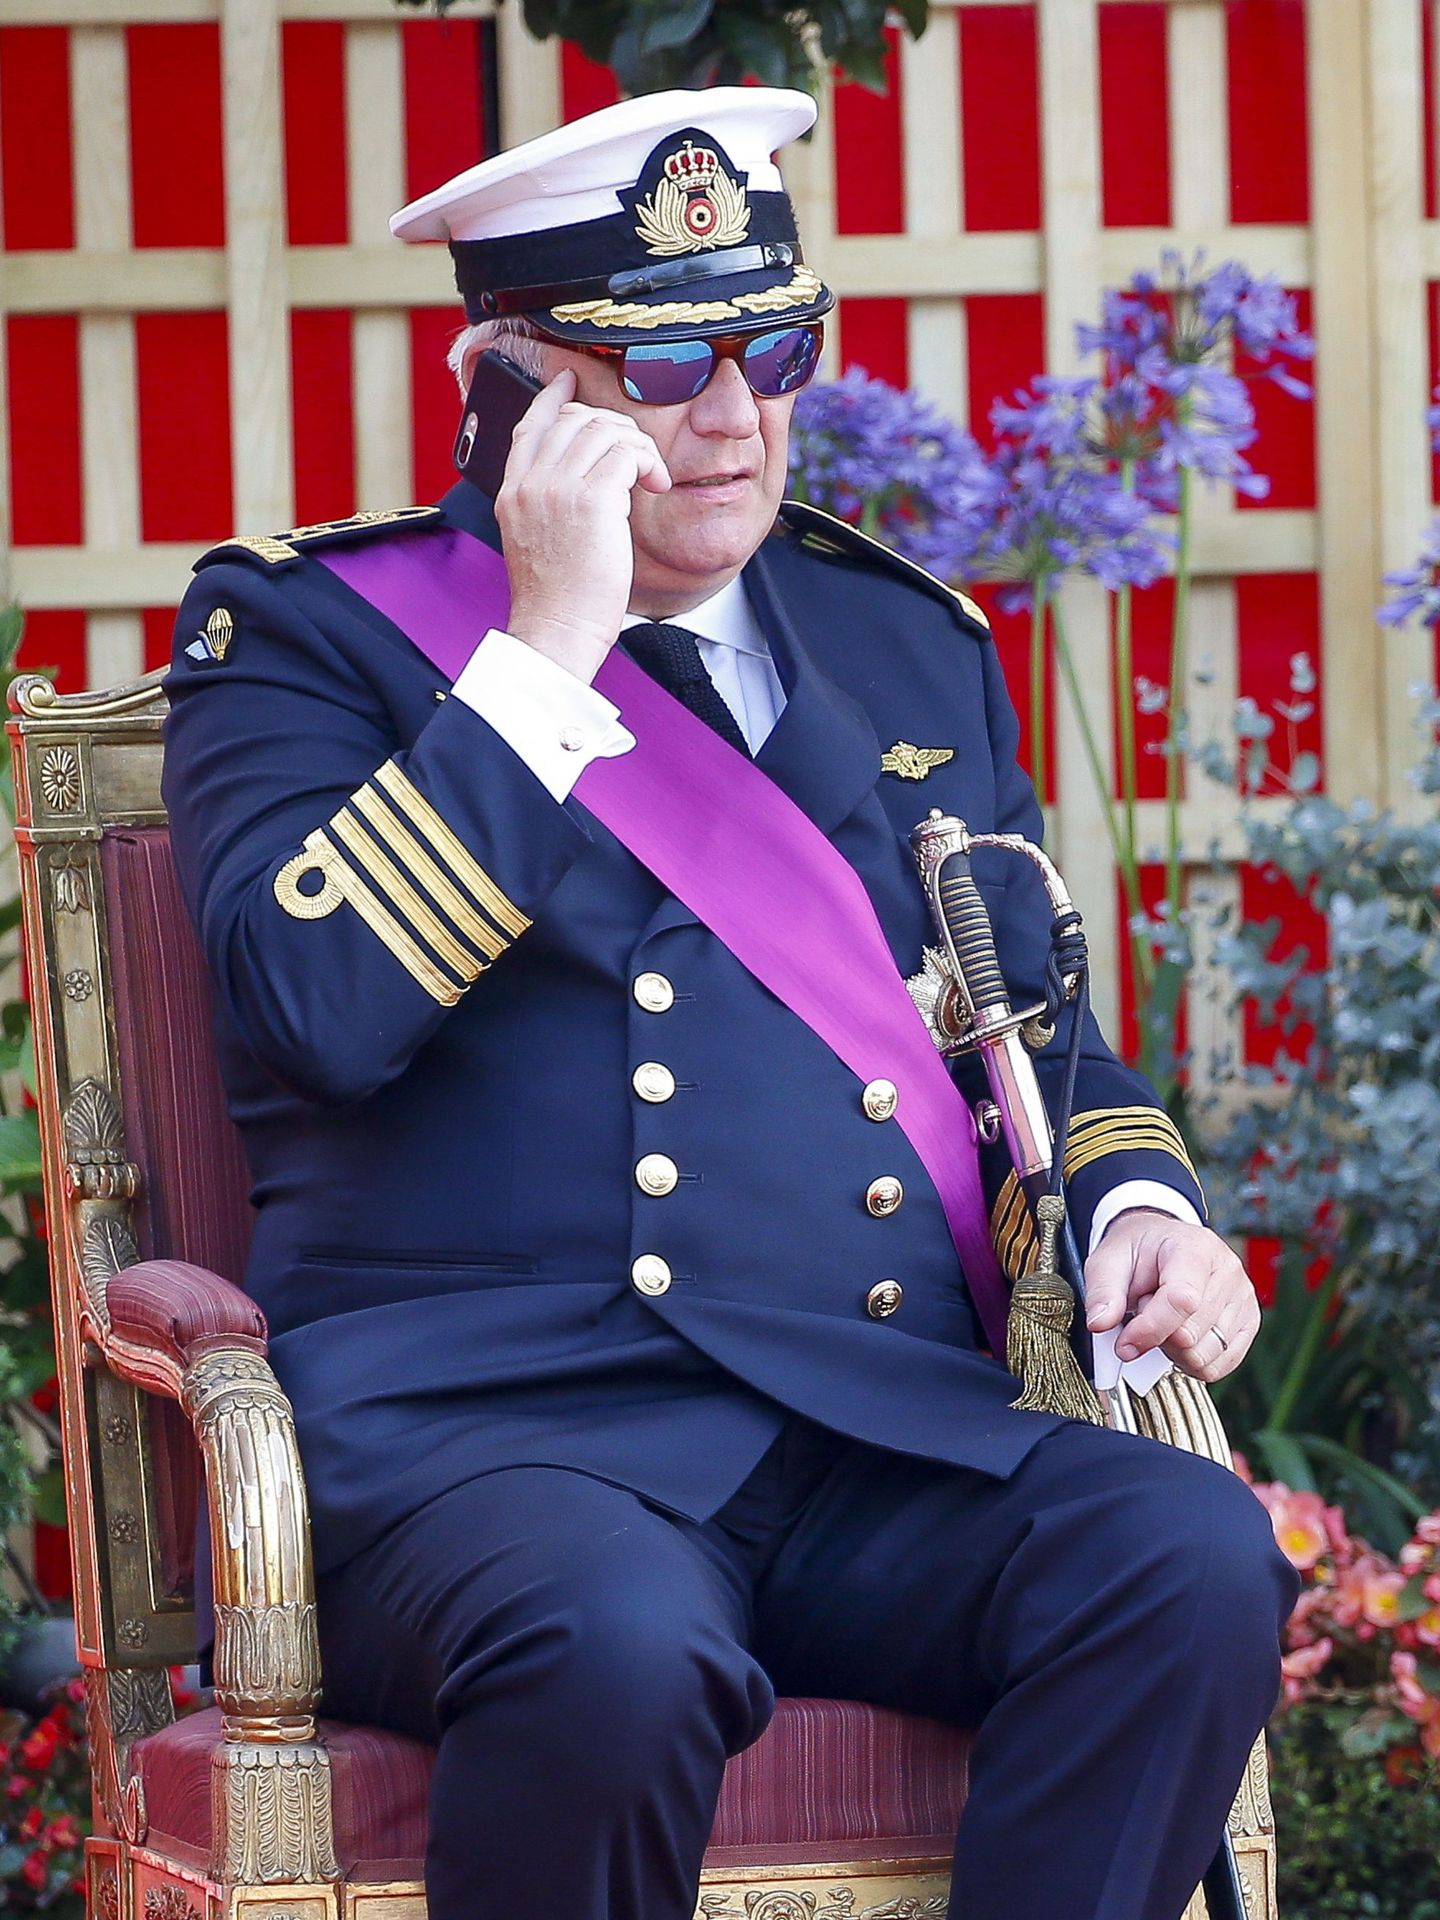 Laurent de Bélgica, hablando por teléfono en las celebraciones del Día Nacional. (Reuters)